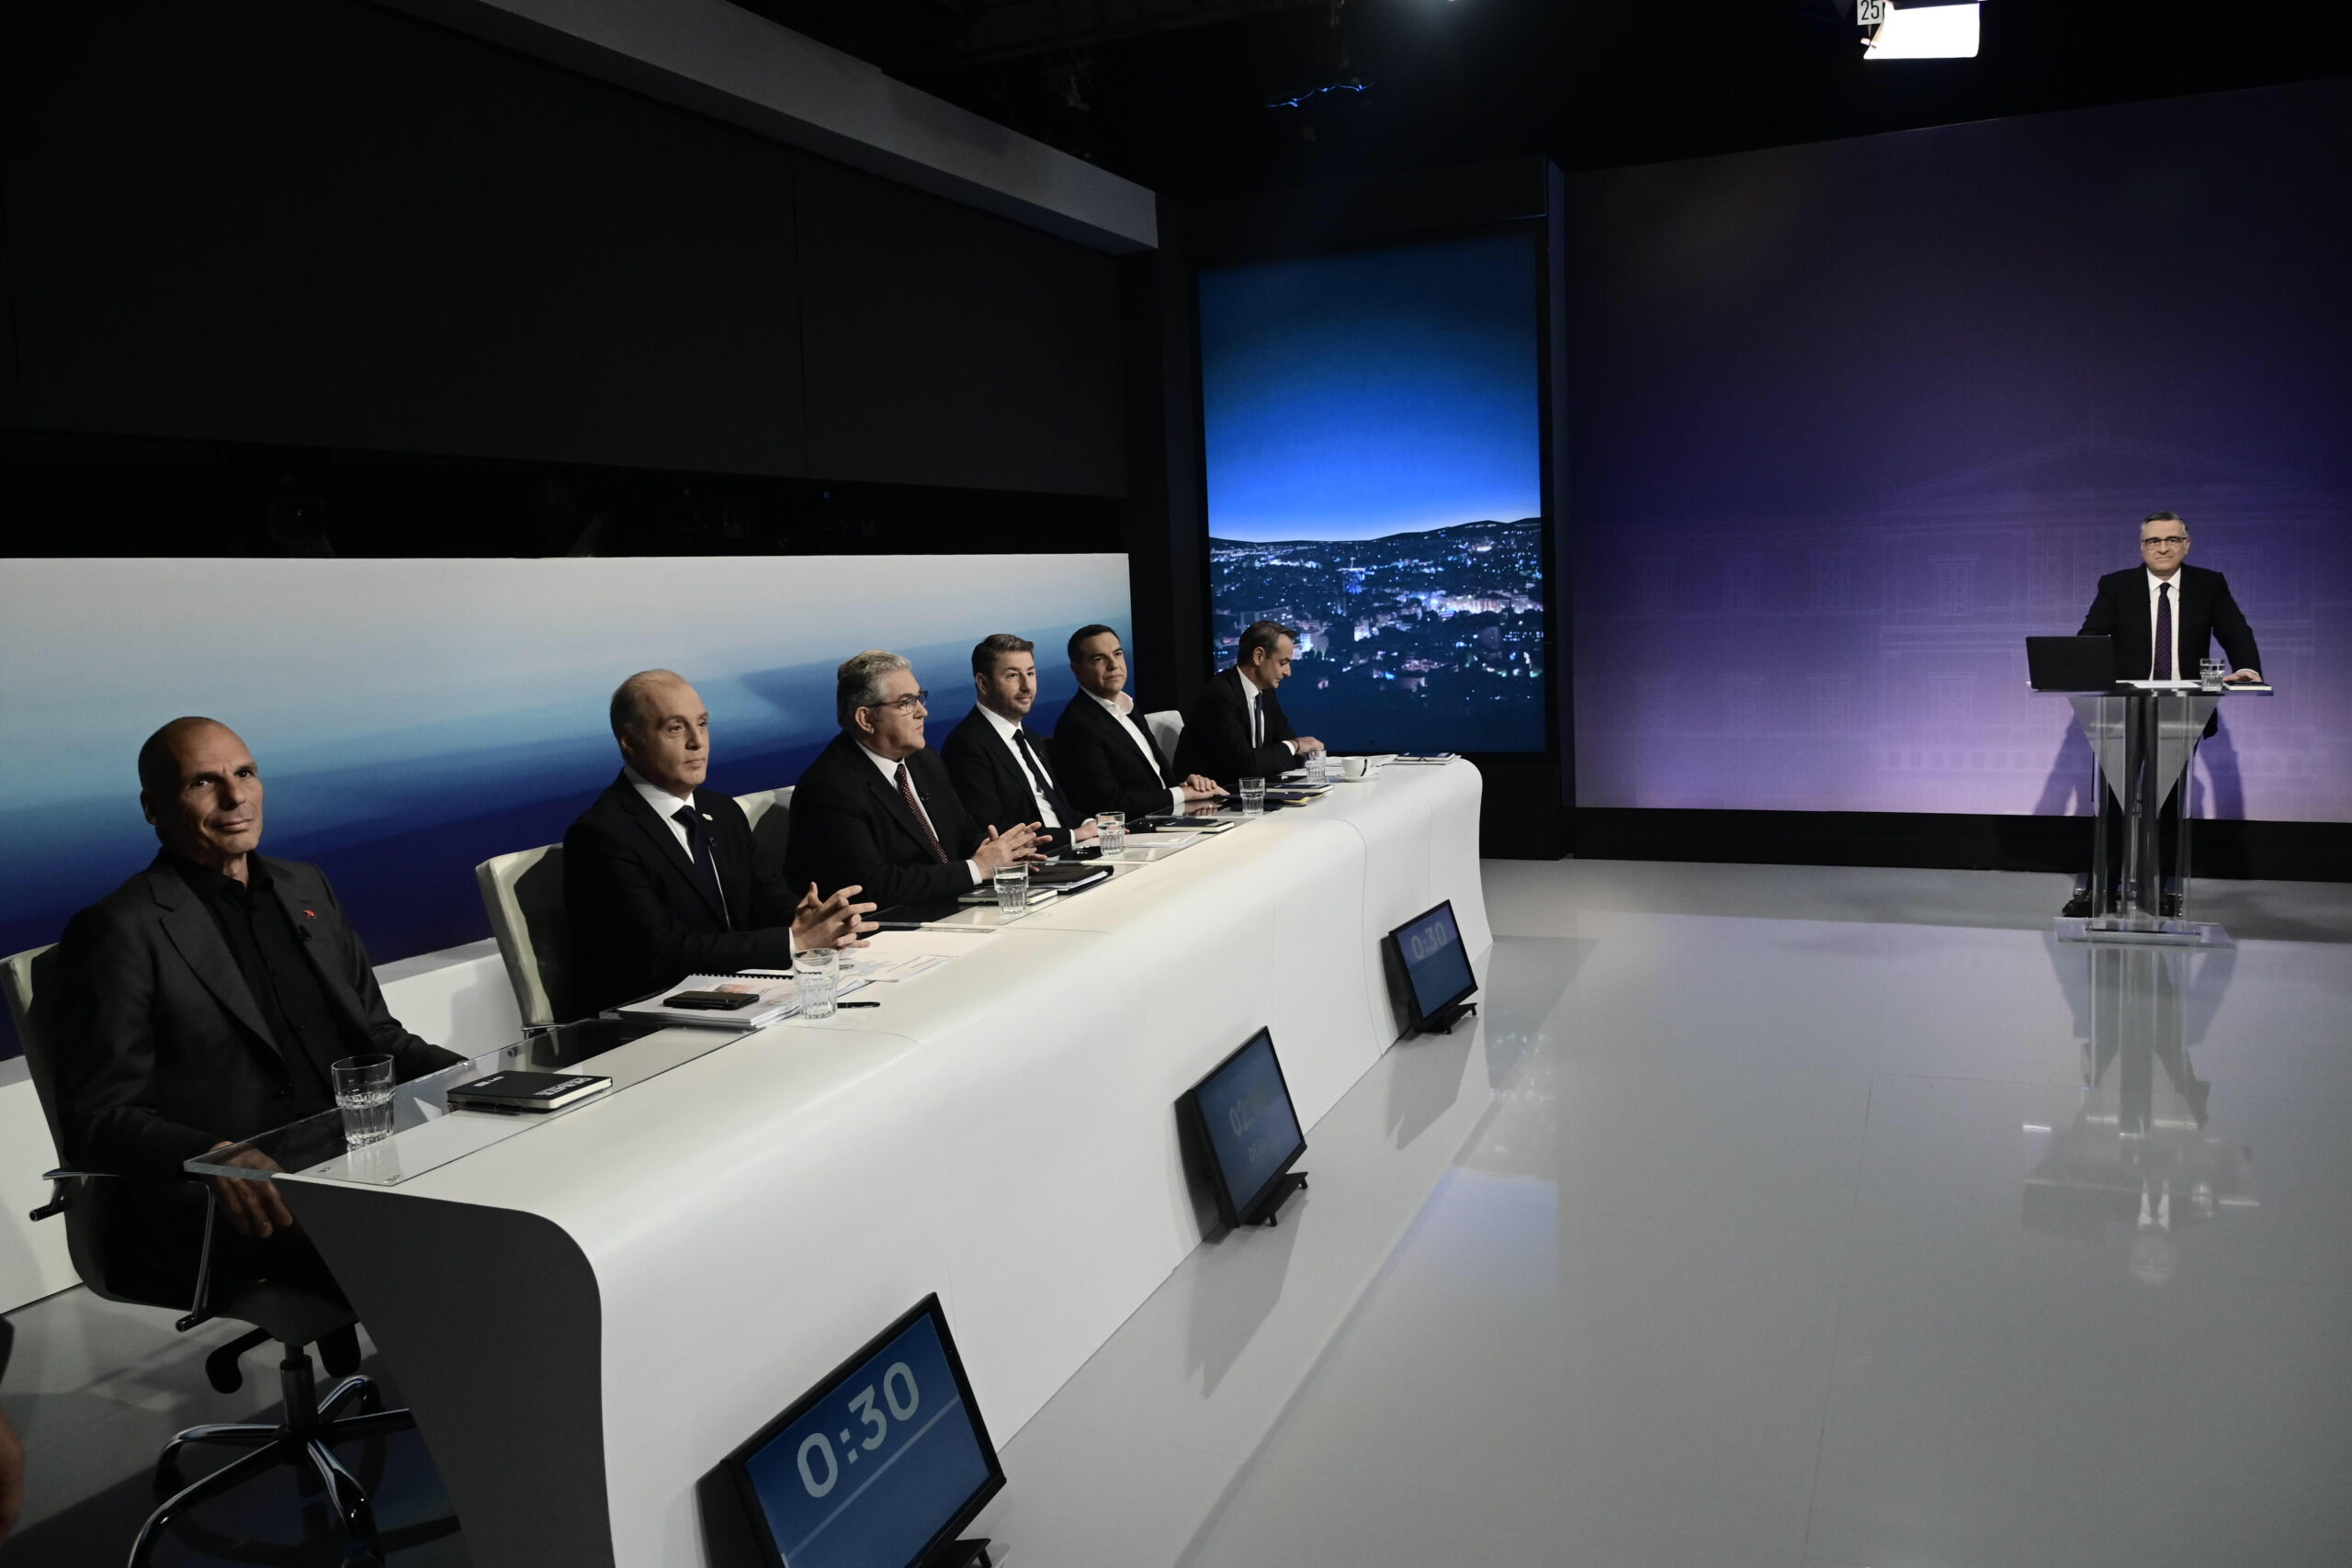 Εκλογές – debate: Κυριάκος Βελόπουλος για Οικονομία, Ανάπτυξη, Απασχόληση: «Αλλαγή του παραγωγικού μοντέλου»